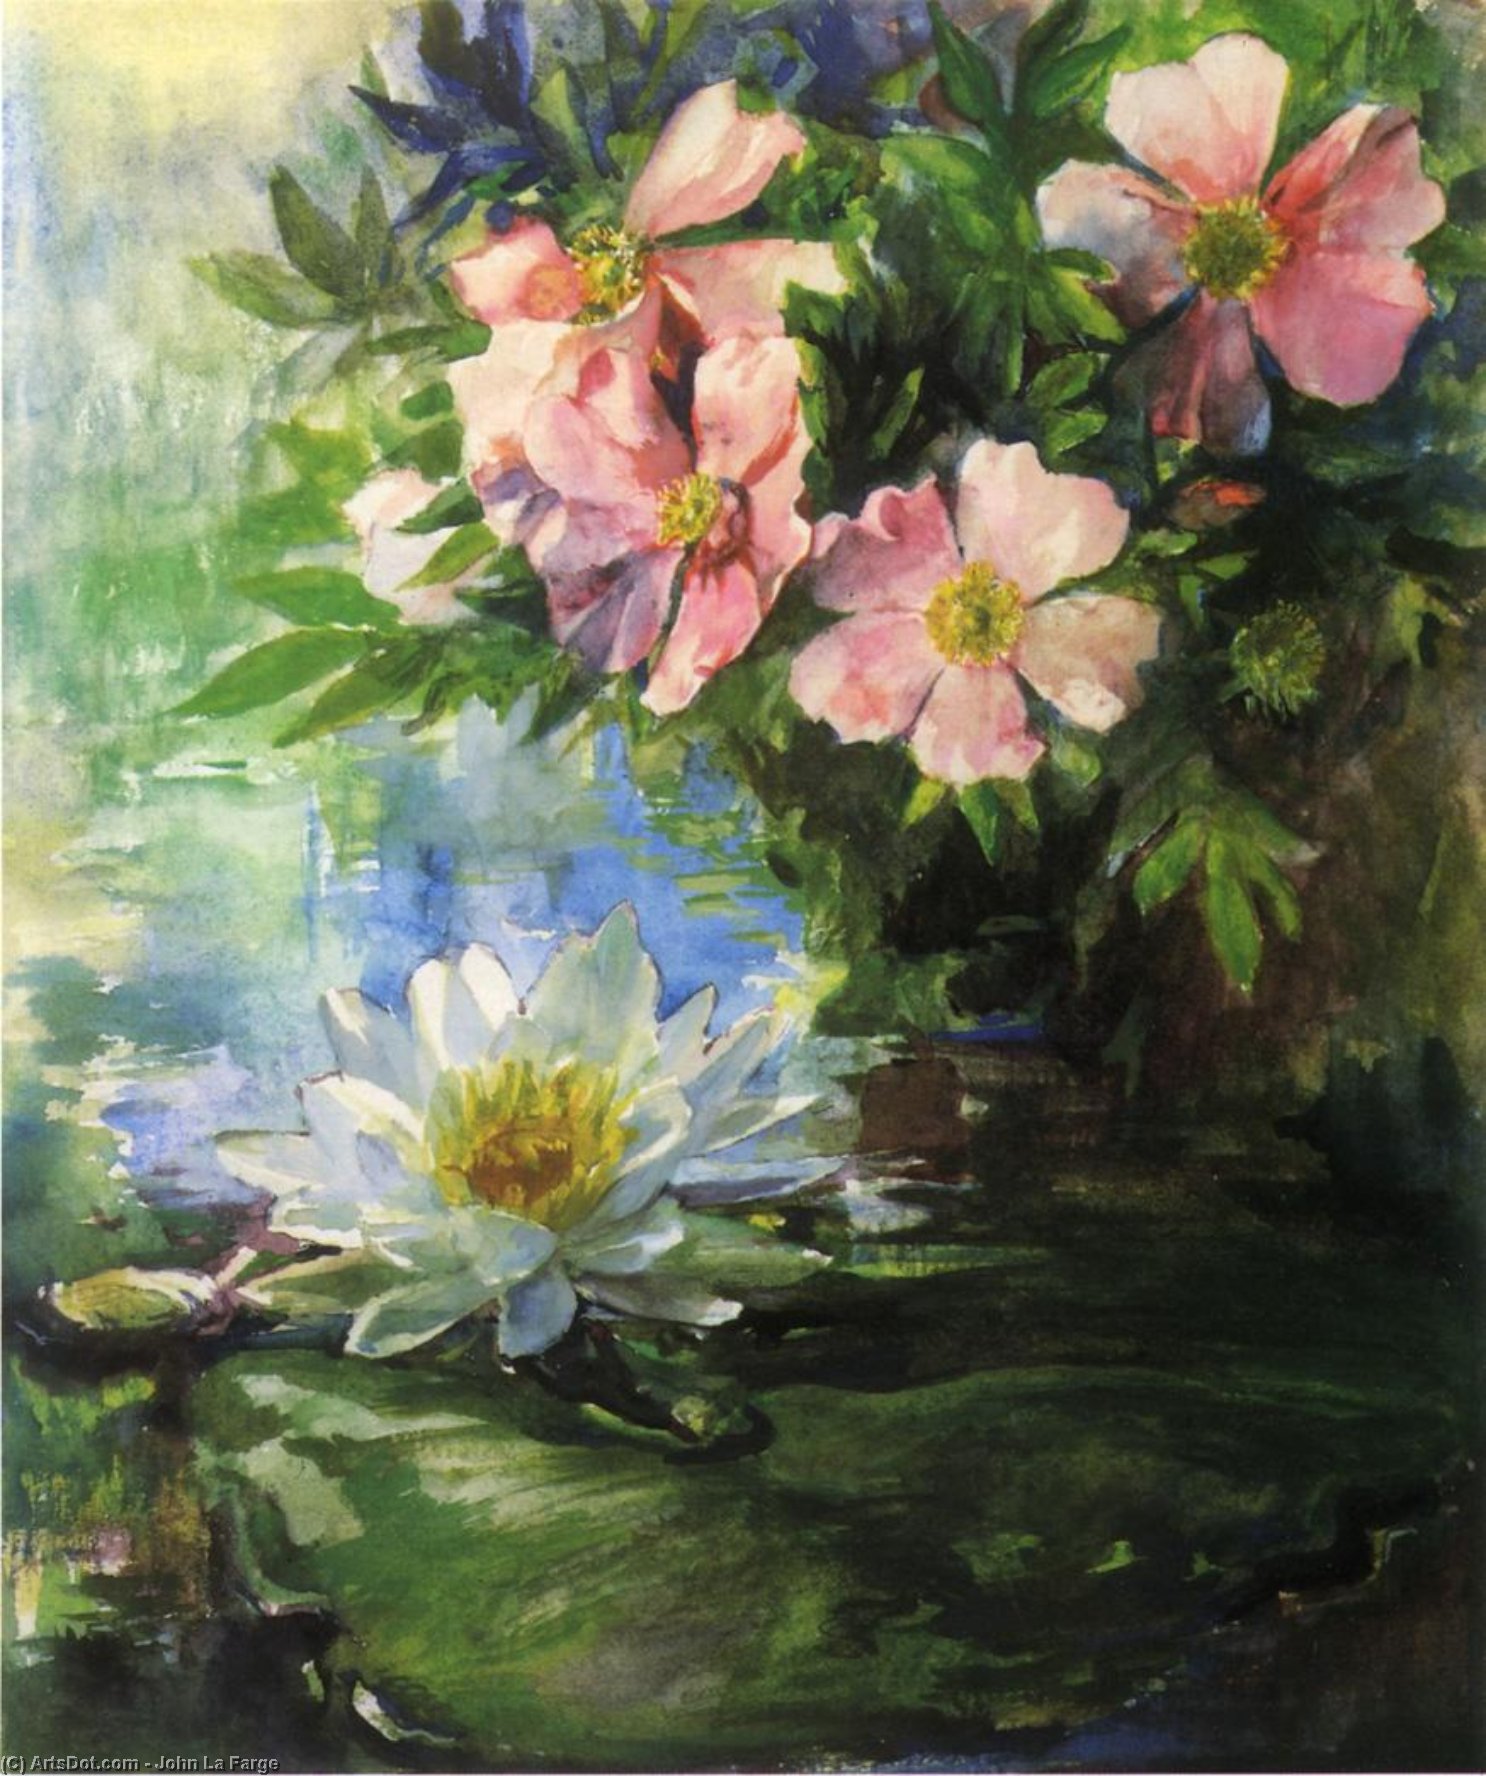 Wikioo.org - Bách khoa toàn thư về mỹ thuật - Vẽ tranh, Tác phẩm nghệ thuật John La Farge - Wild Roses and Water Lily - Study of Sunlight